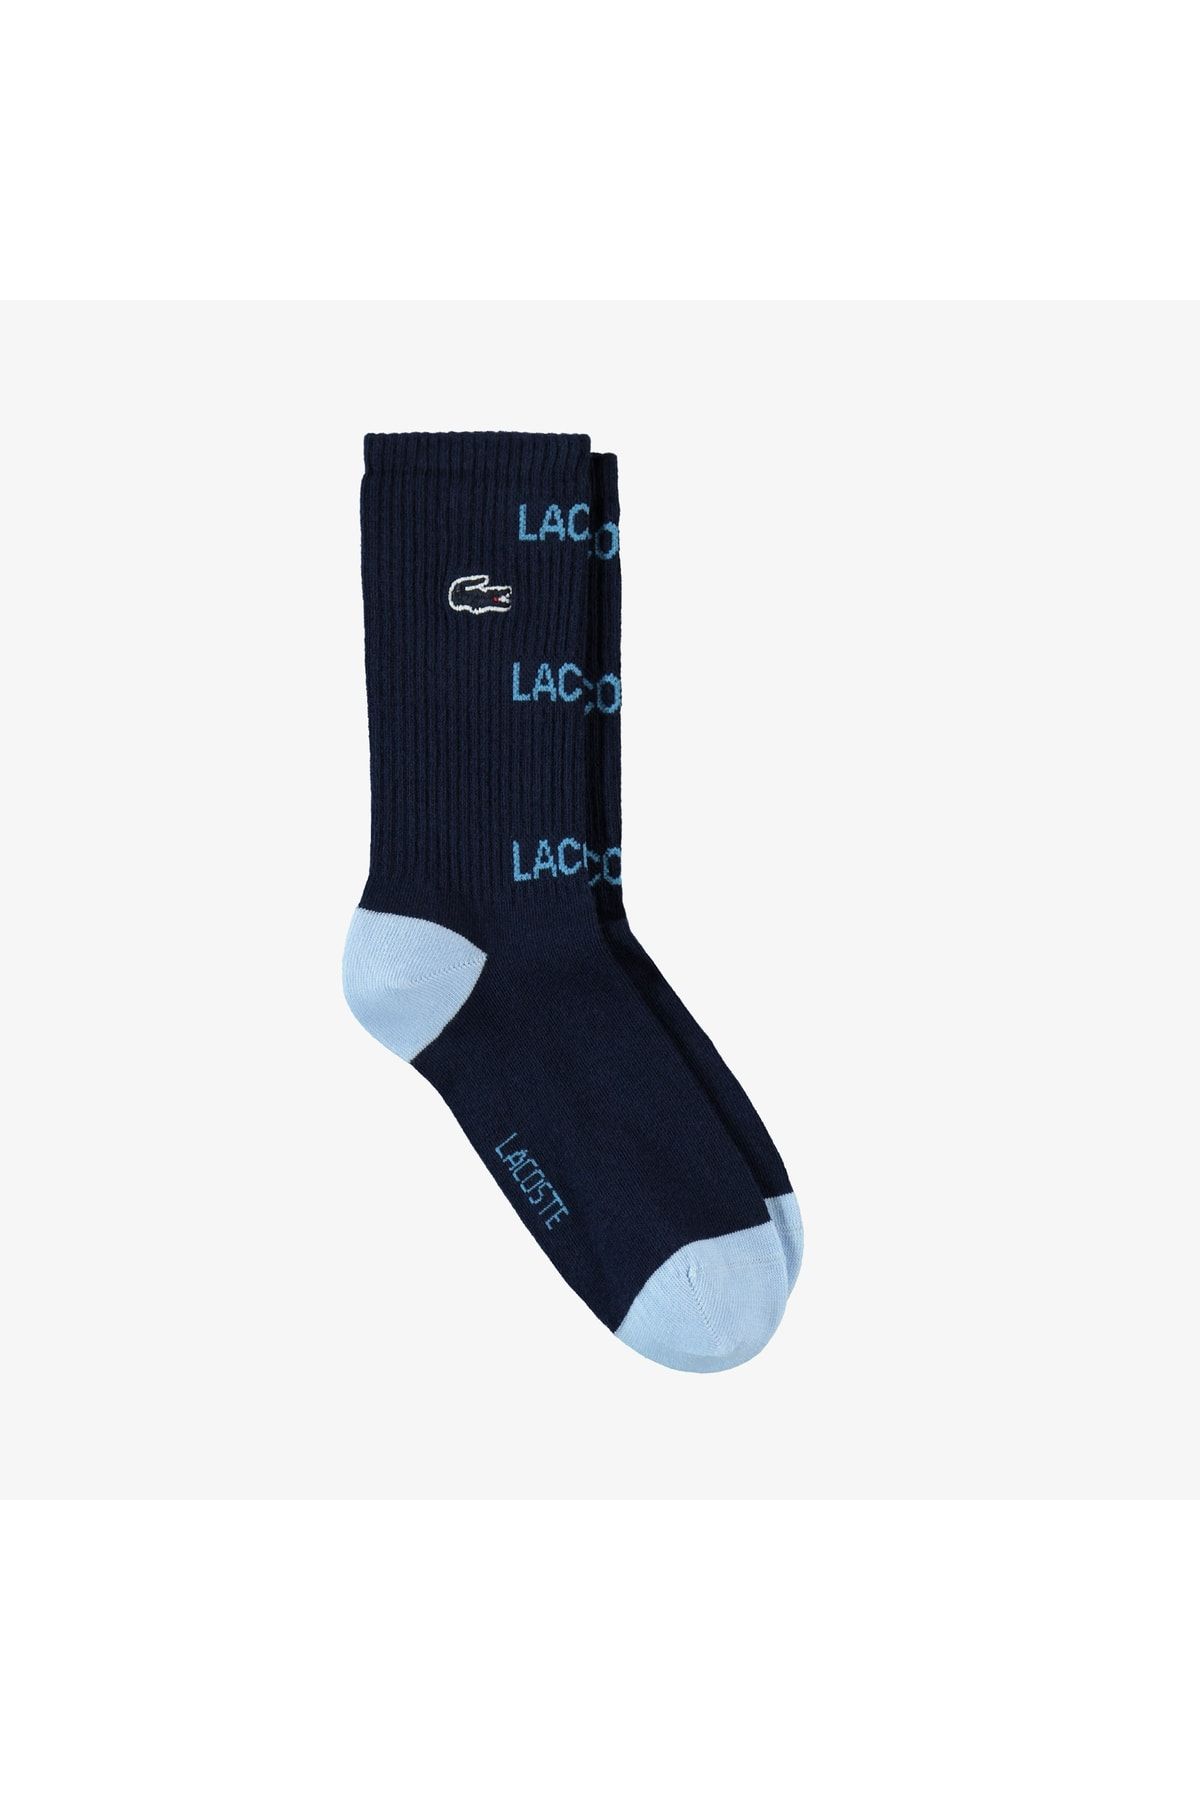 Lacoste Kadın Baskılı Lacivert Çorap